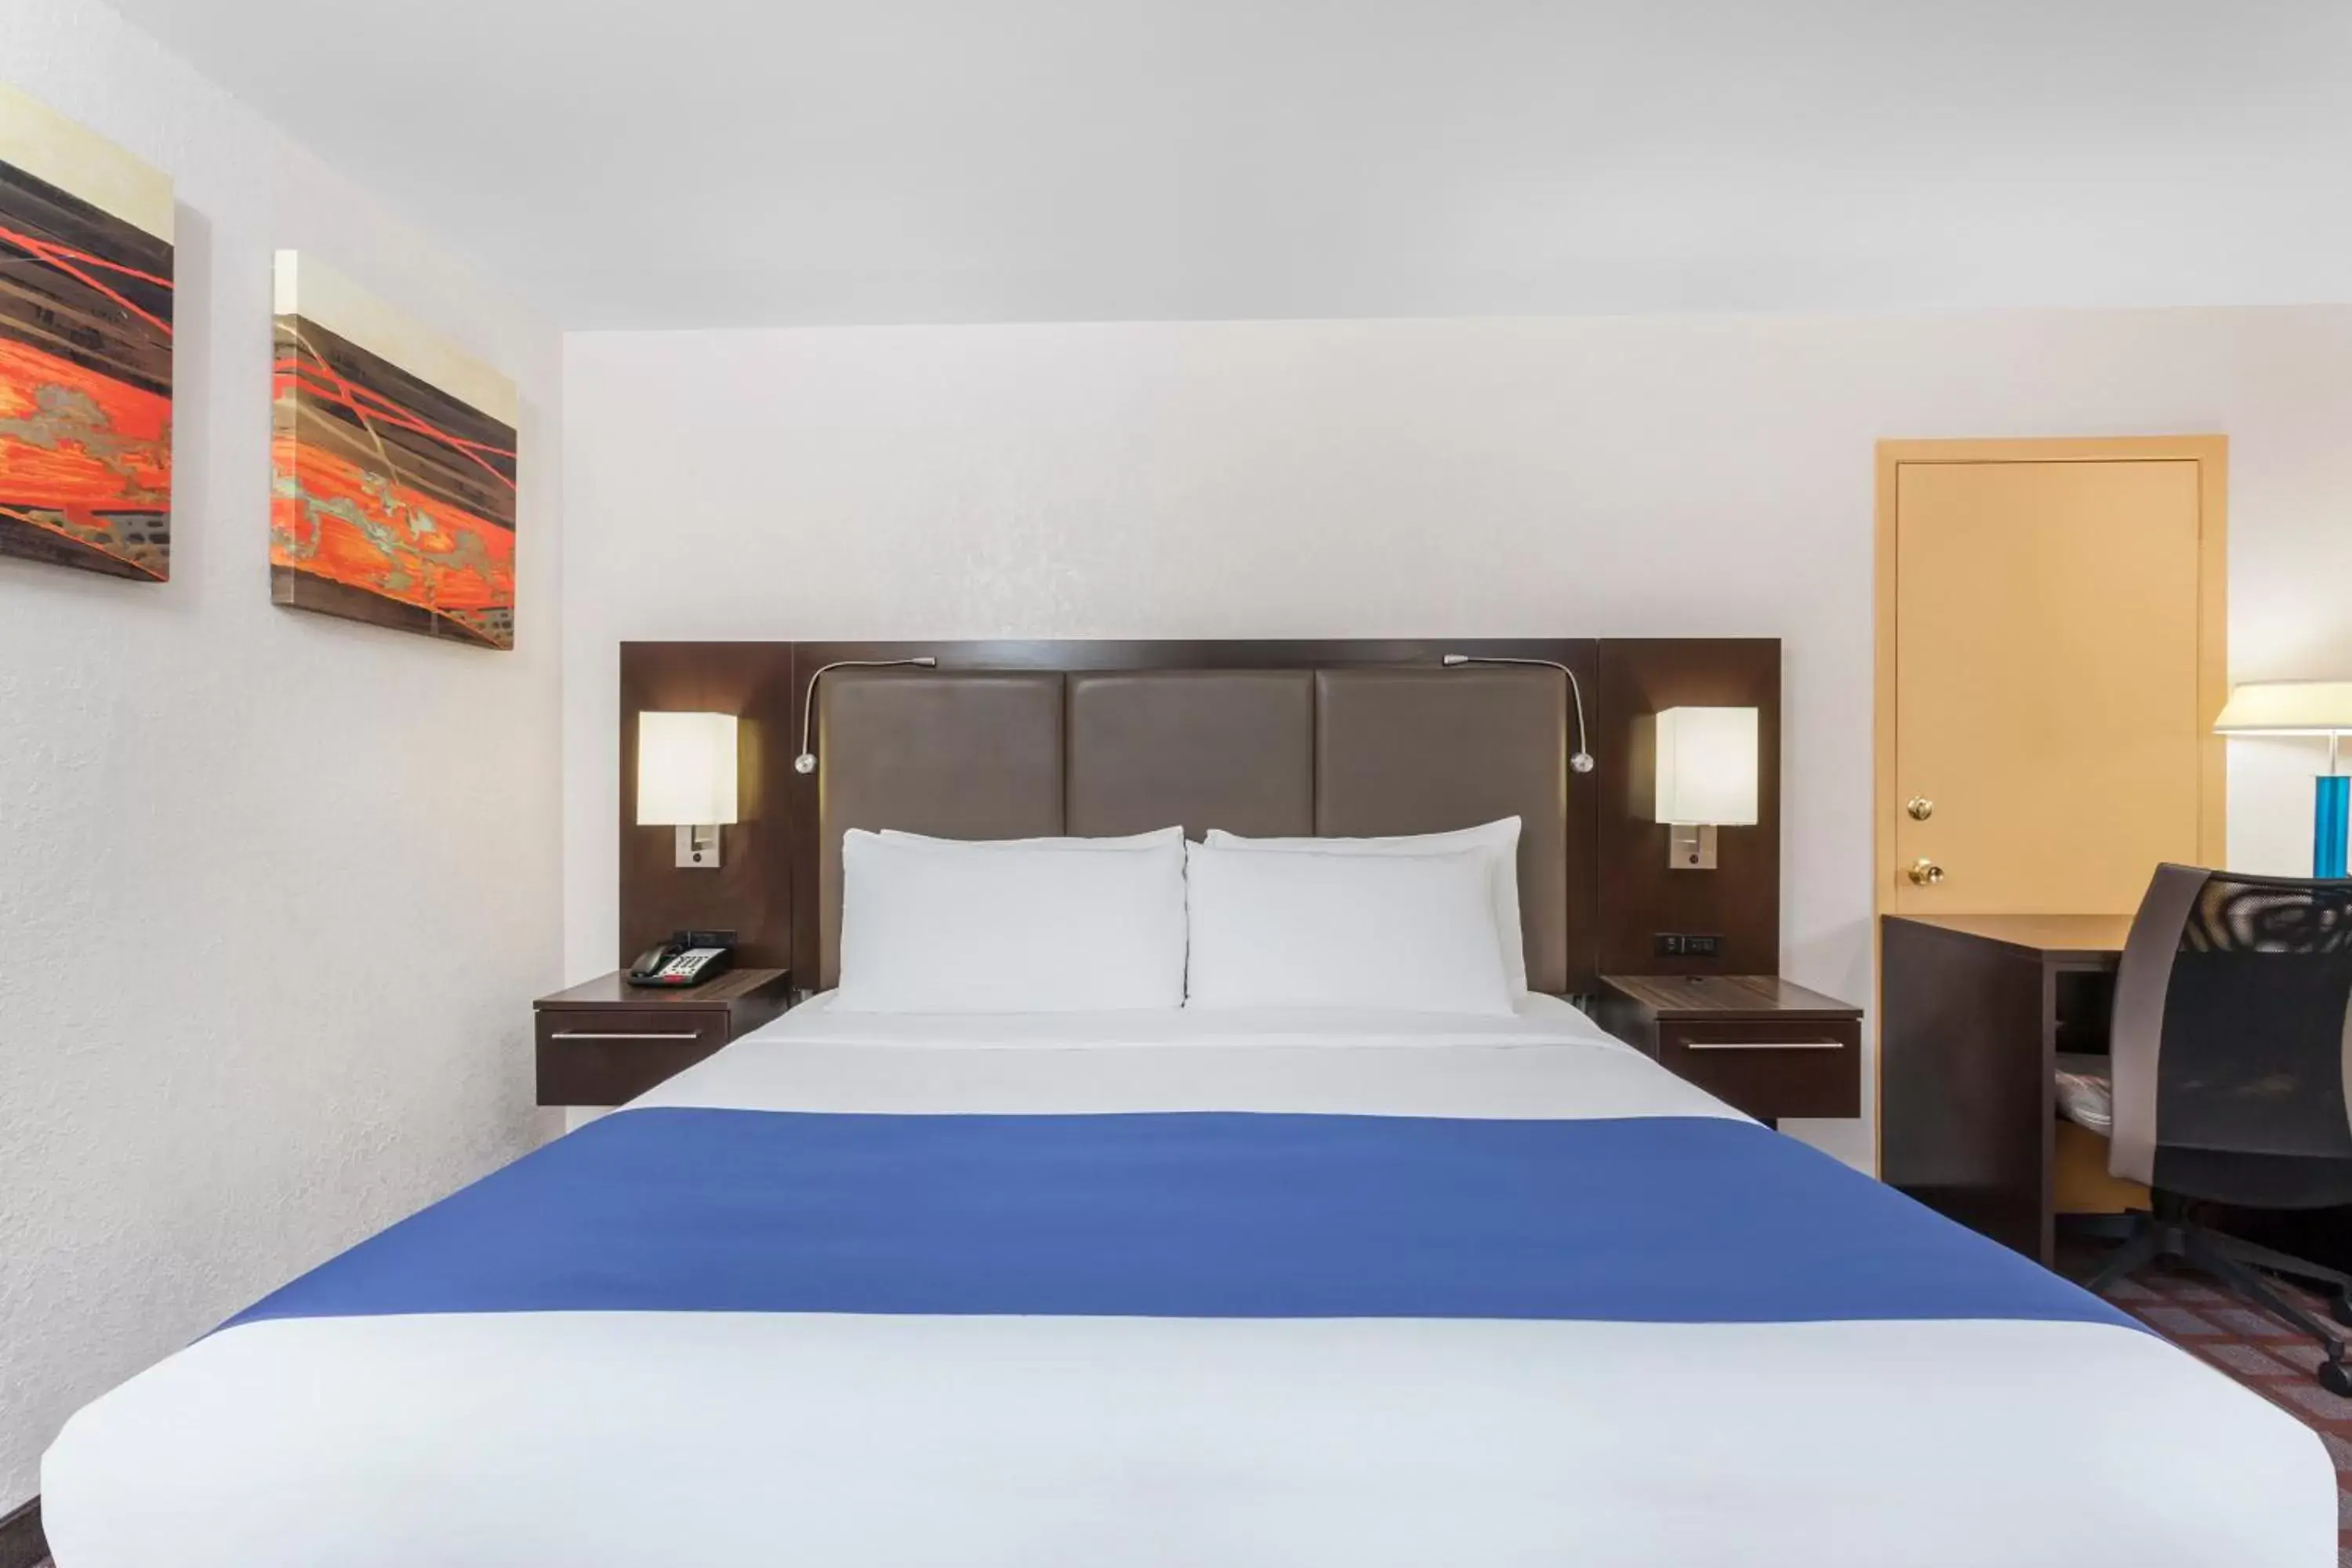 Bedroom, Bed in Days Inn by Wyndham Woodbury Long Island